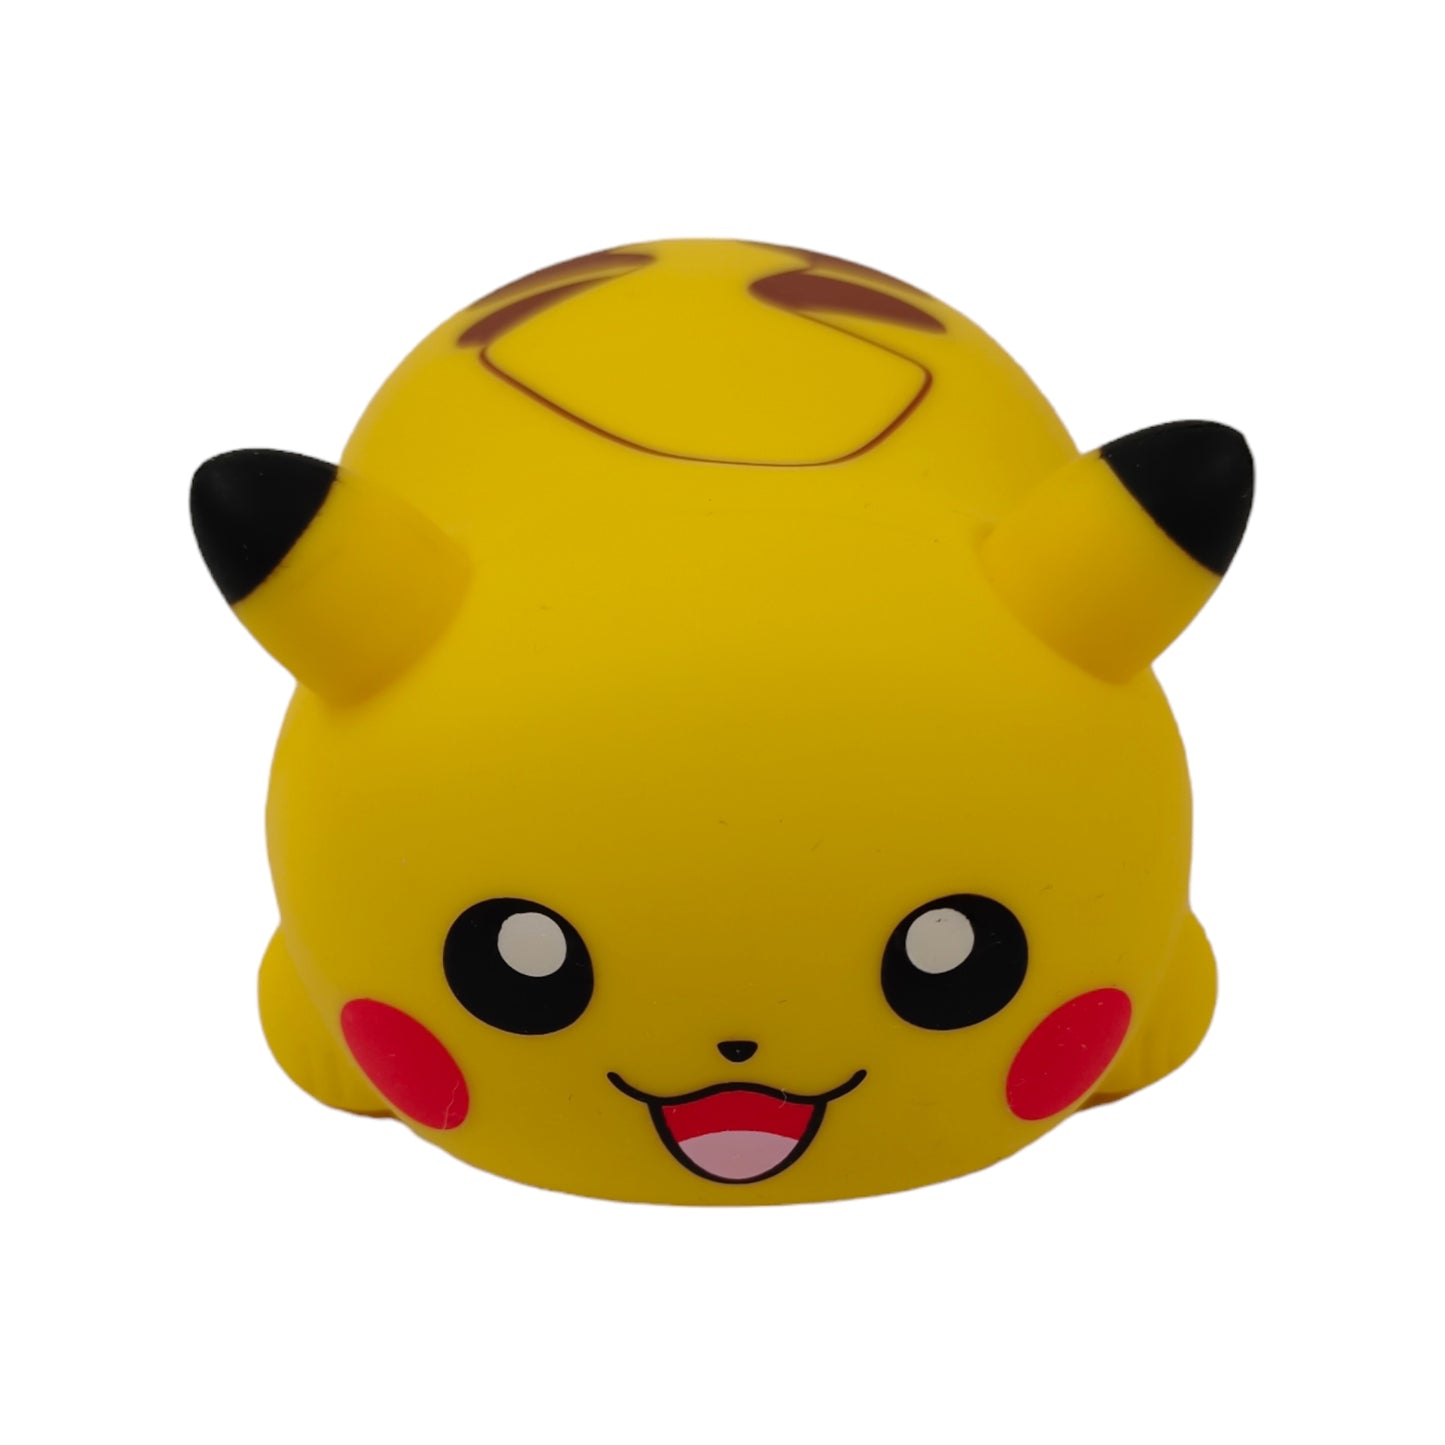 Ensemble complet de 8 jouets DoReMiFa Pikachu